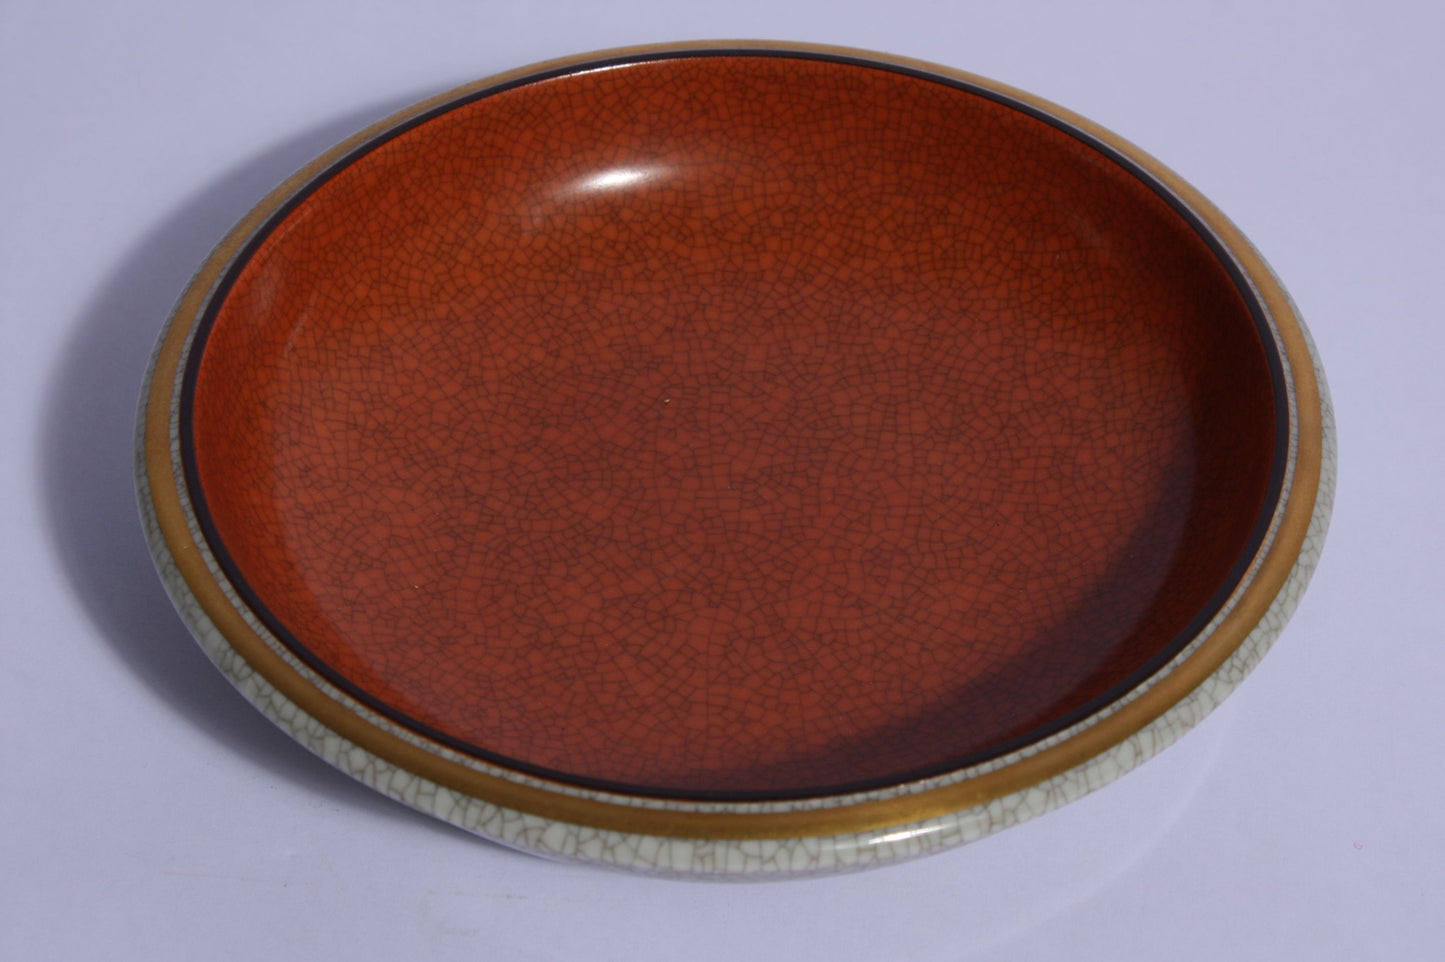 Royal Copenhagen crackleware plate no. 2